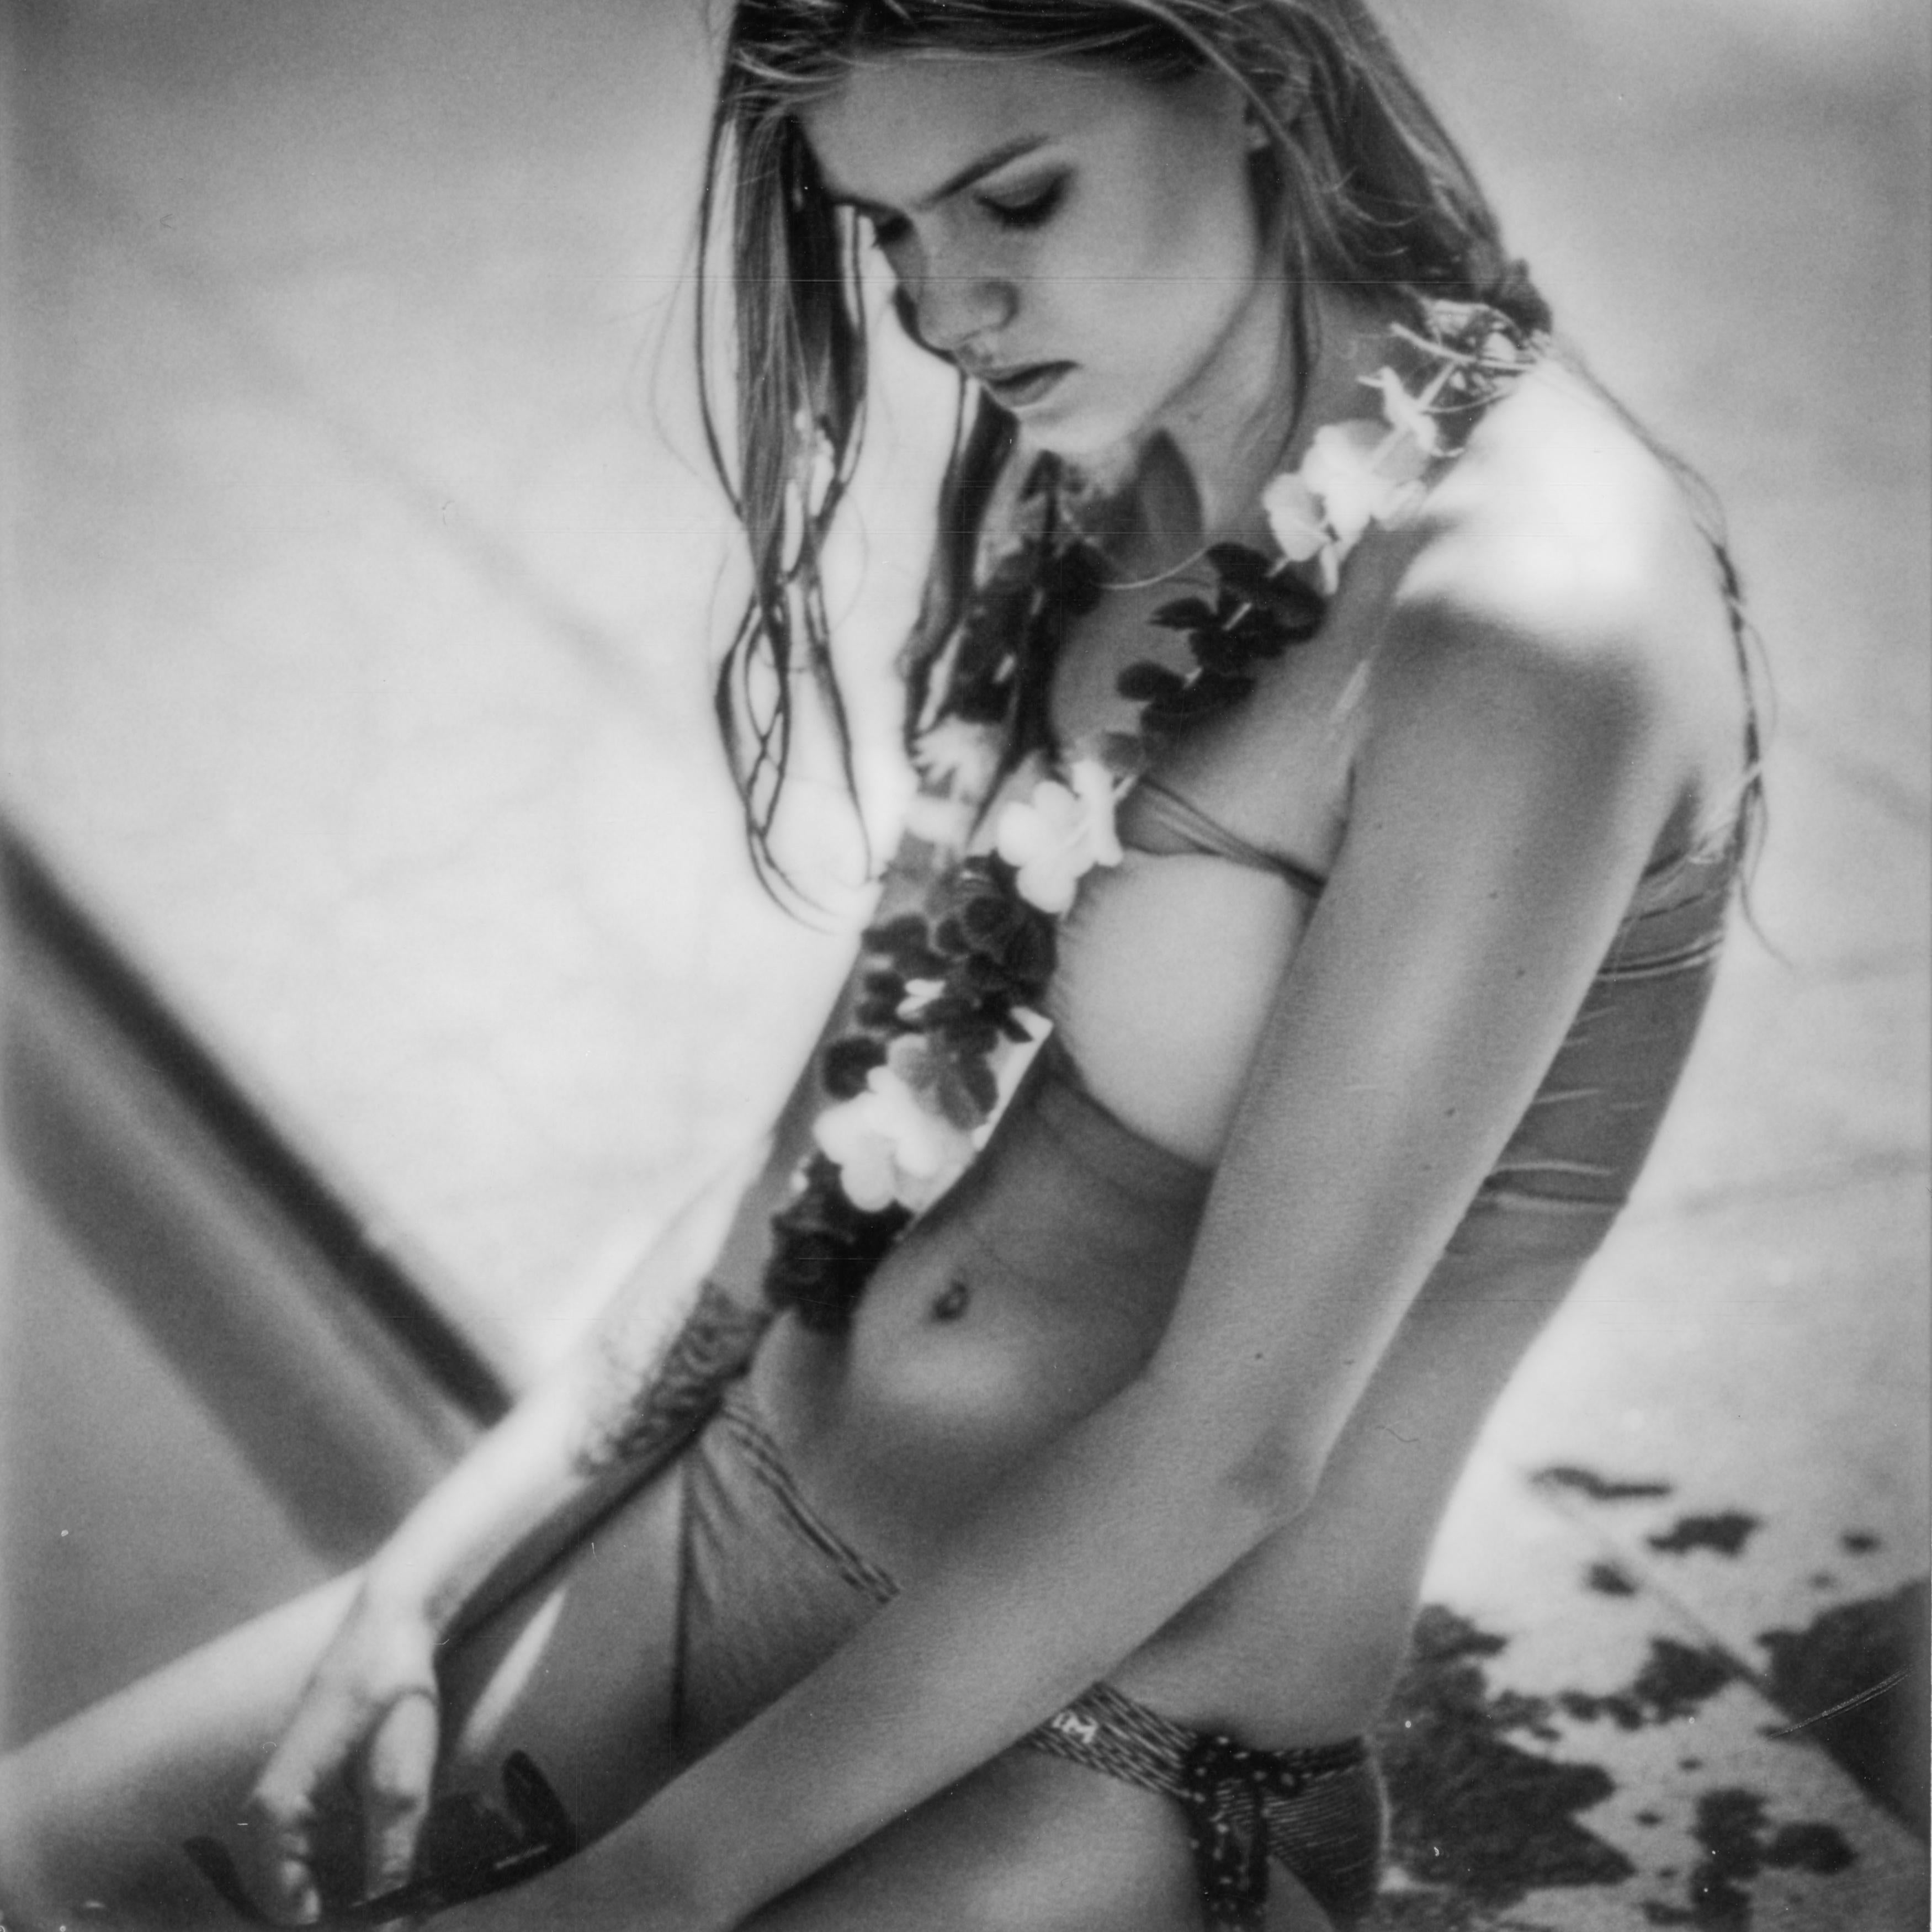 Kirsten Thys van den Audenaerde Nude Photograph - Misunderstood - Polaroid, Black and White, Women, 21st Century, Nude